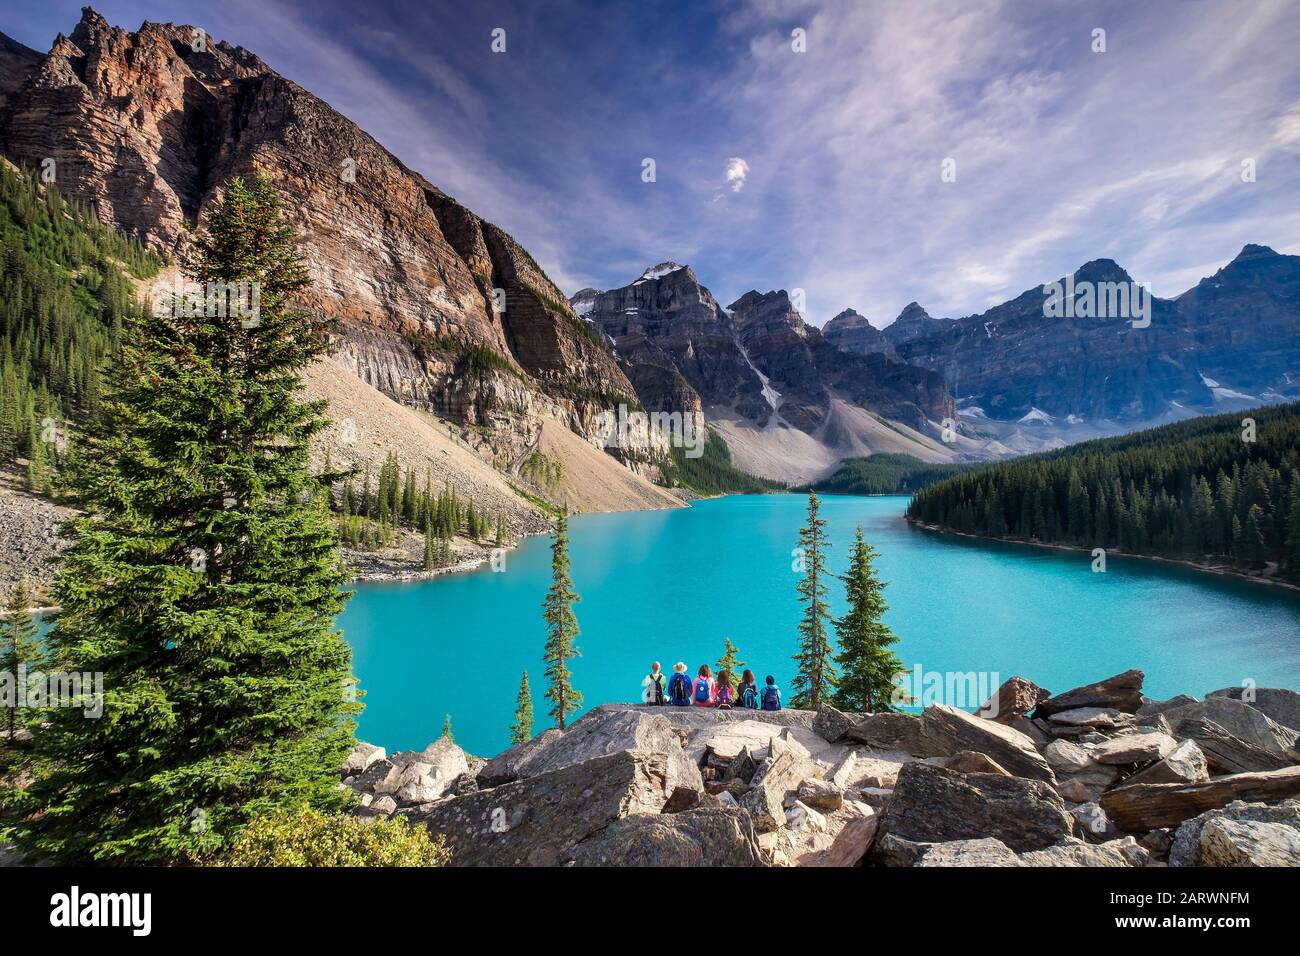 Admirer La Vue Depuis Le Rockpile, Le Lac Moraine, La Vallée Des Dix Pics, Le Parc National Banff, Les Rocheuses Canadiennes, Alberta, Canada Banque D'Images